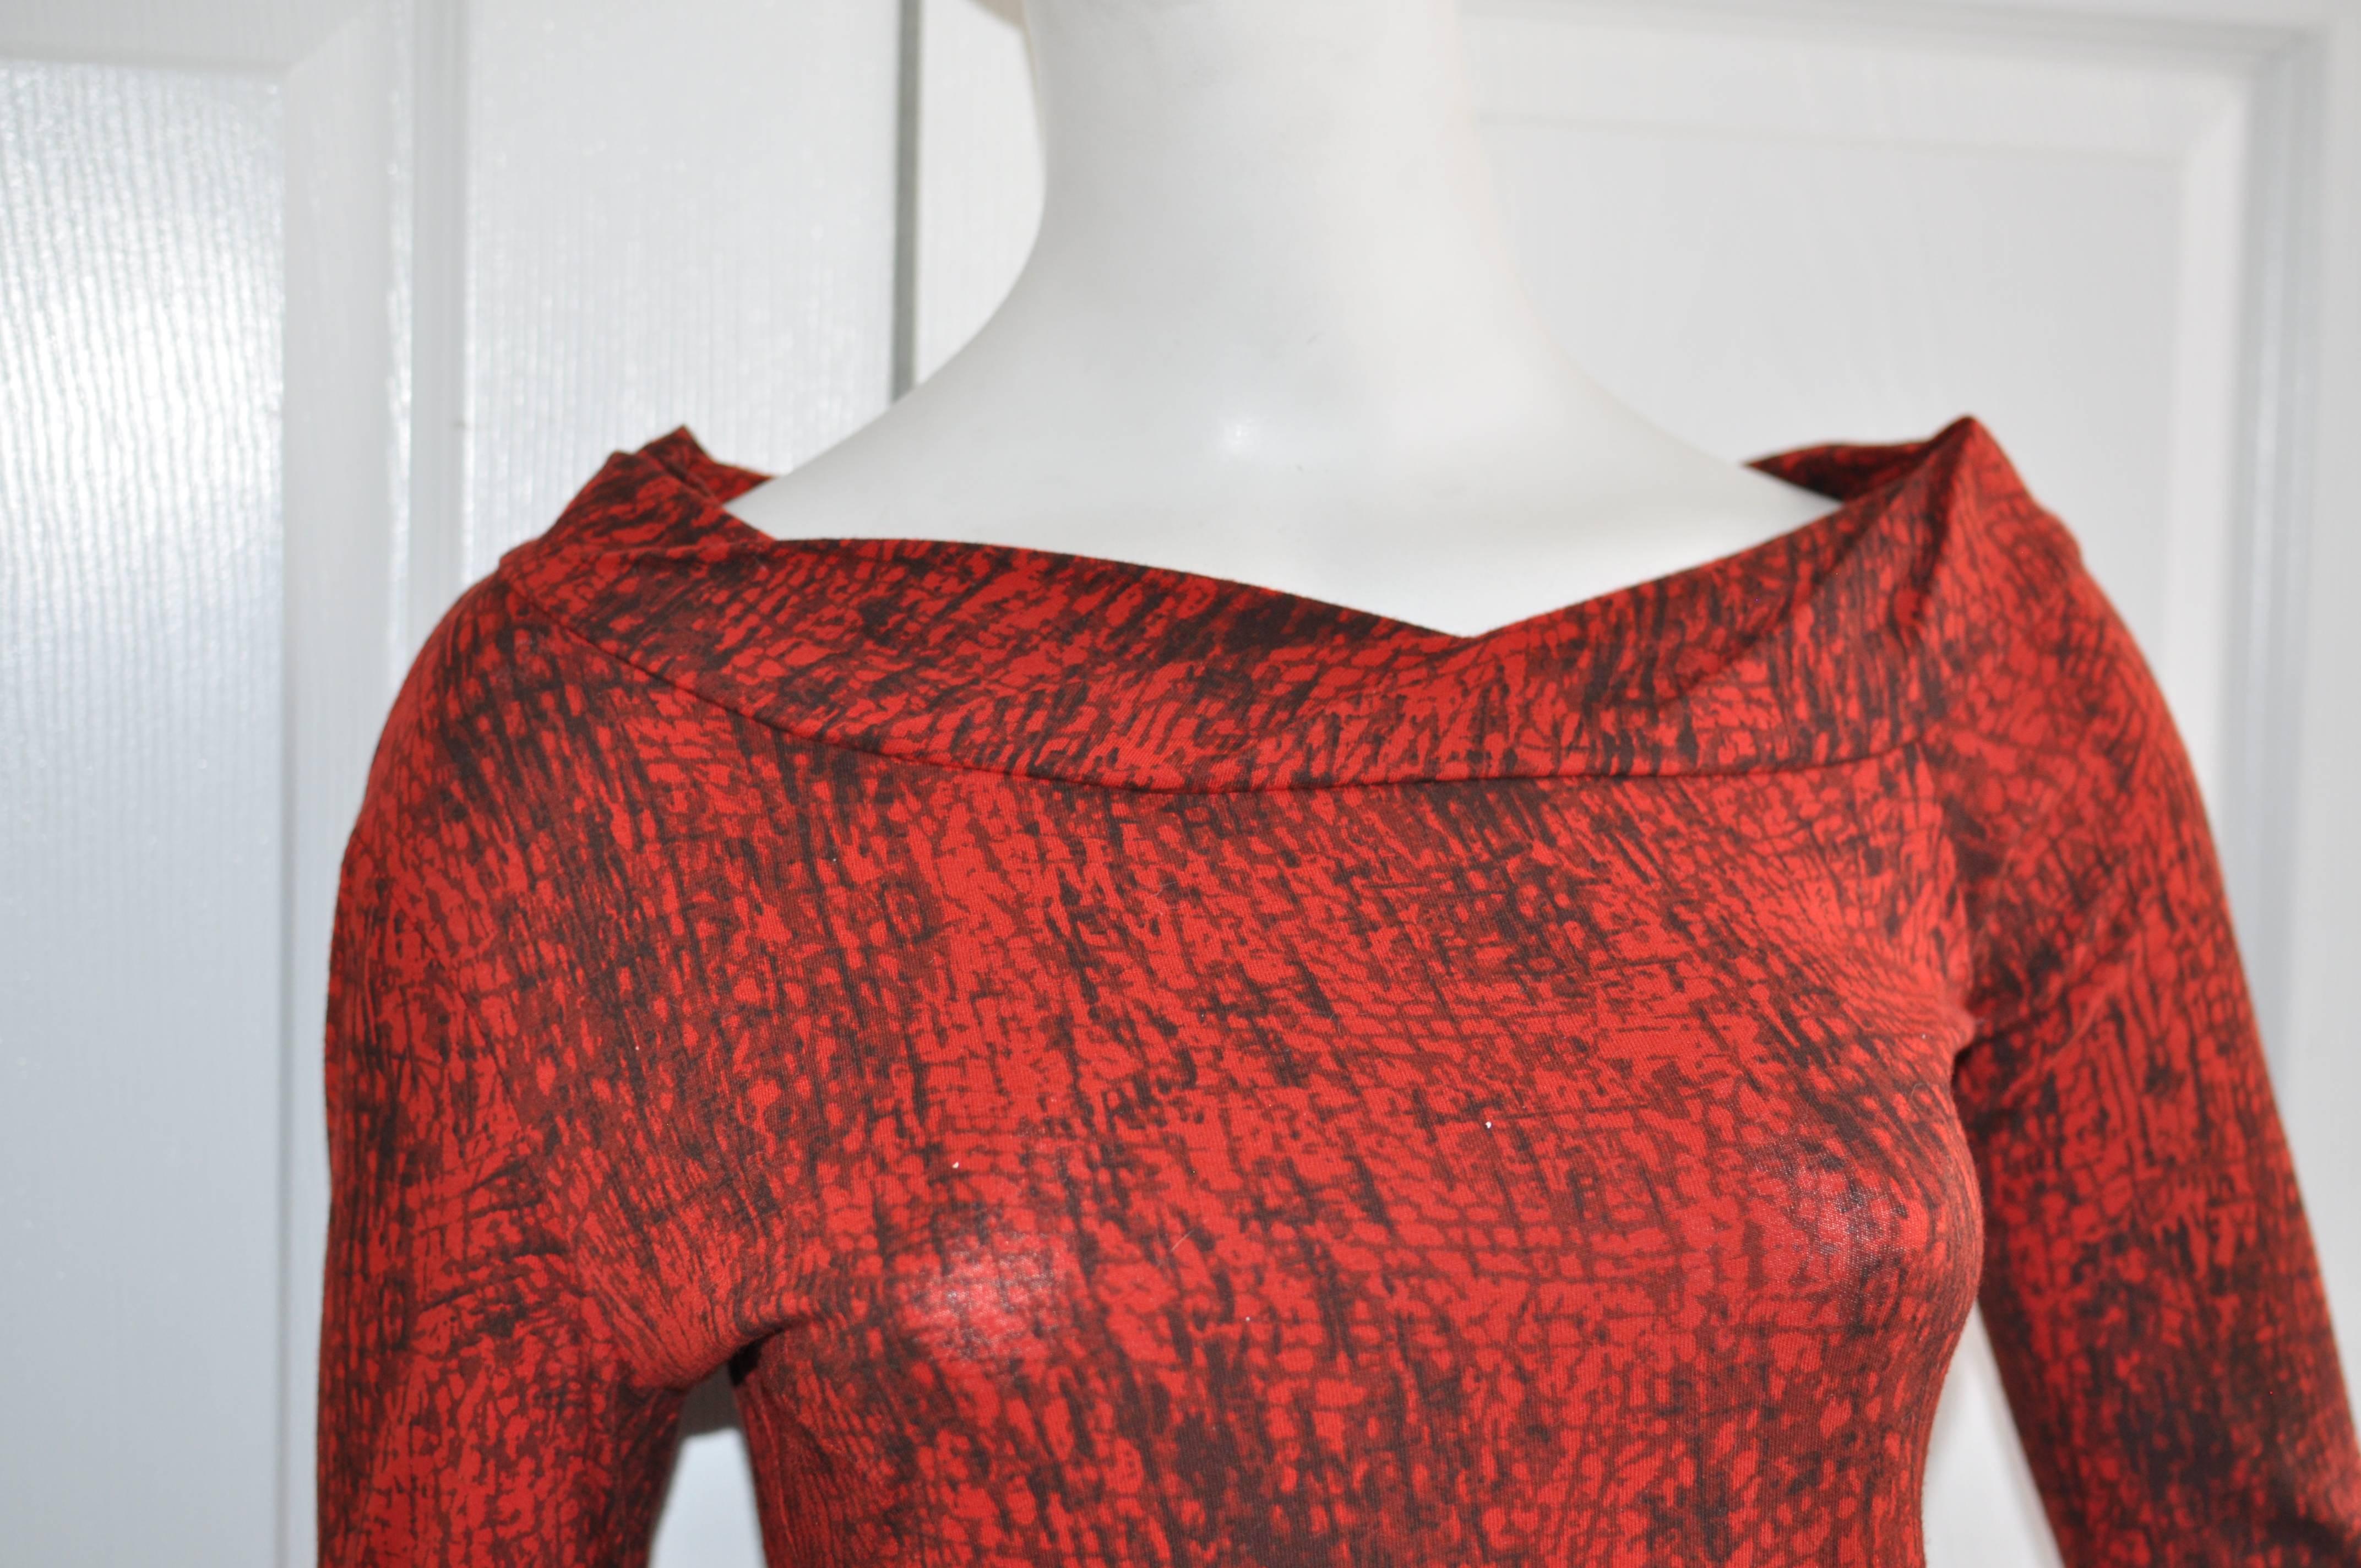 Hübsches bedrucktes Baumwollkleid mit drapiertem, gefaltetem Halsausschnitt; asymmetrischer doppelter und gefalteter Saum, der sich auch an den Ärmelabschlüssen wiederfindet.
Dieses Kleid aus 100 % Baumwolle hat einen gewissen Stretchanteil.